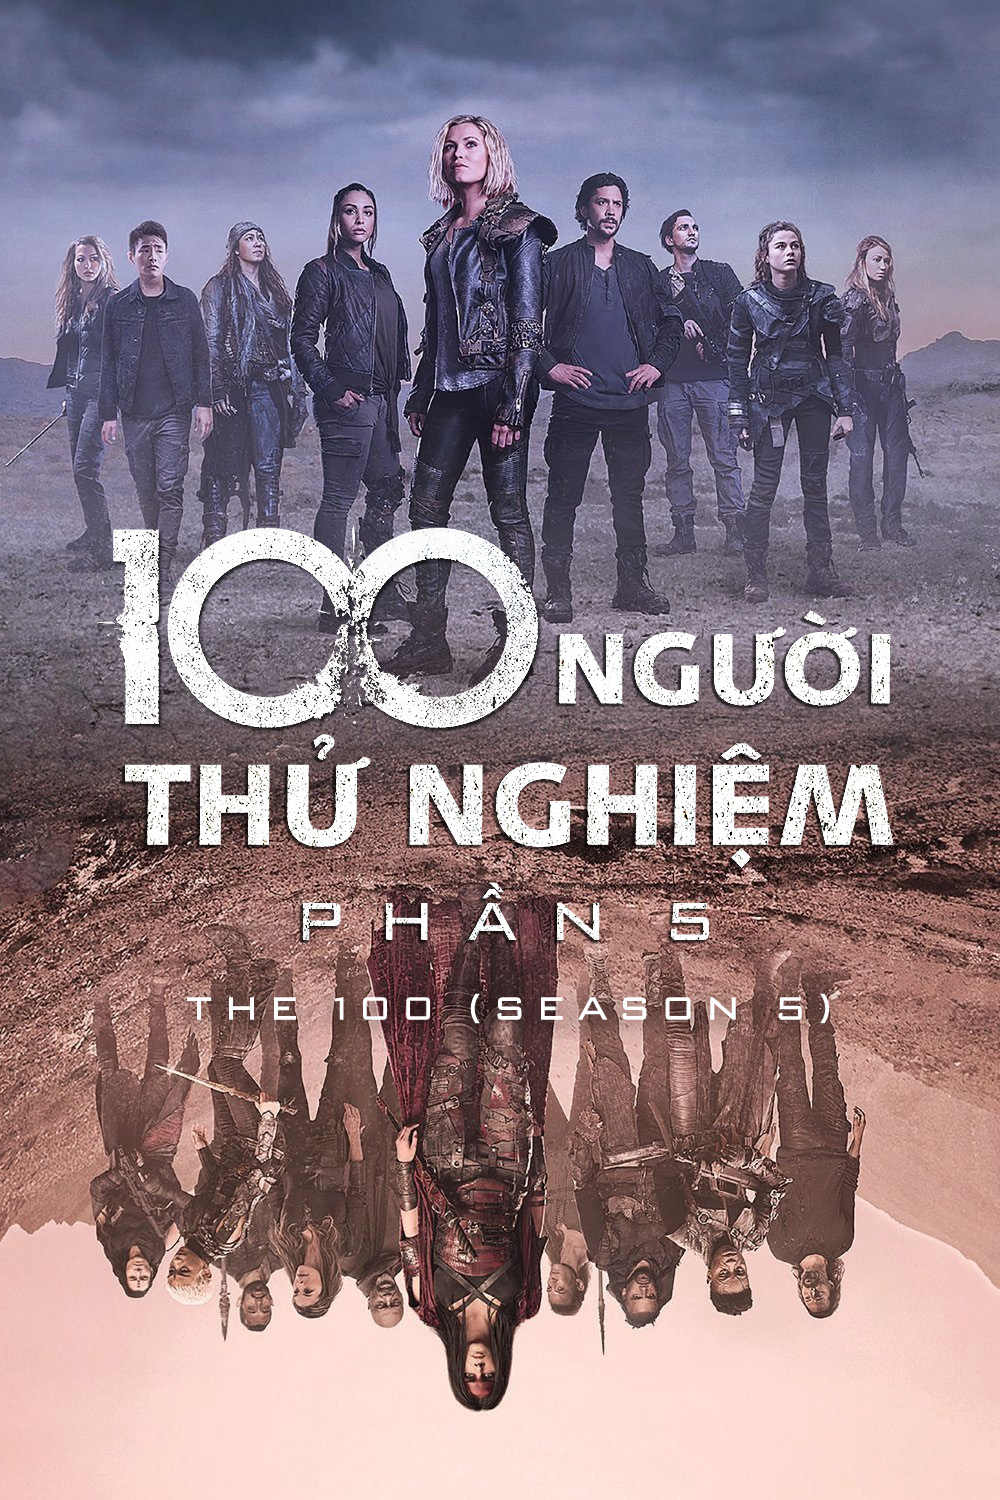 Poster Phim 100 Người Thử Nghiệm (Phần 5) (The 100 (Season 5))